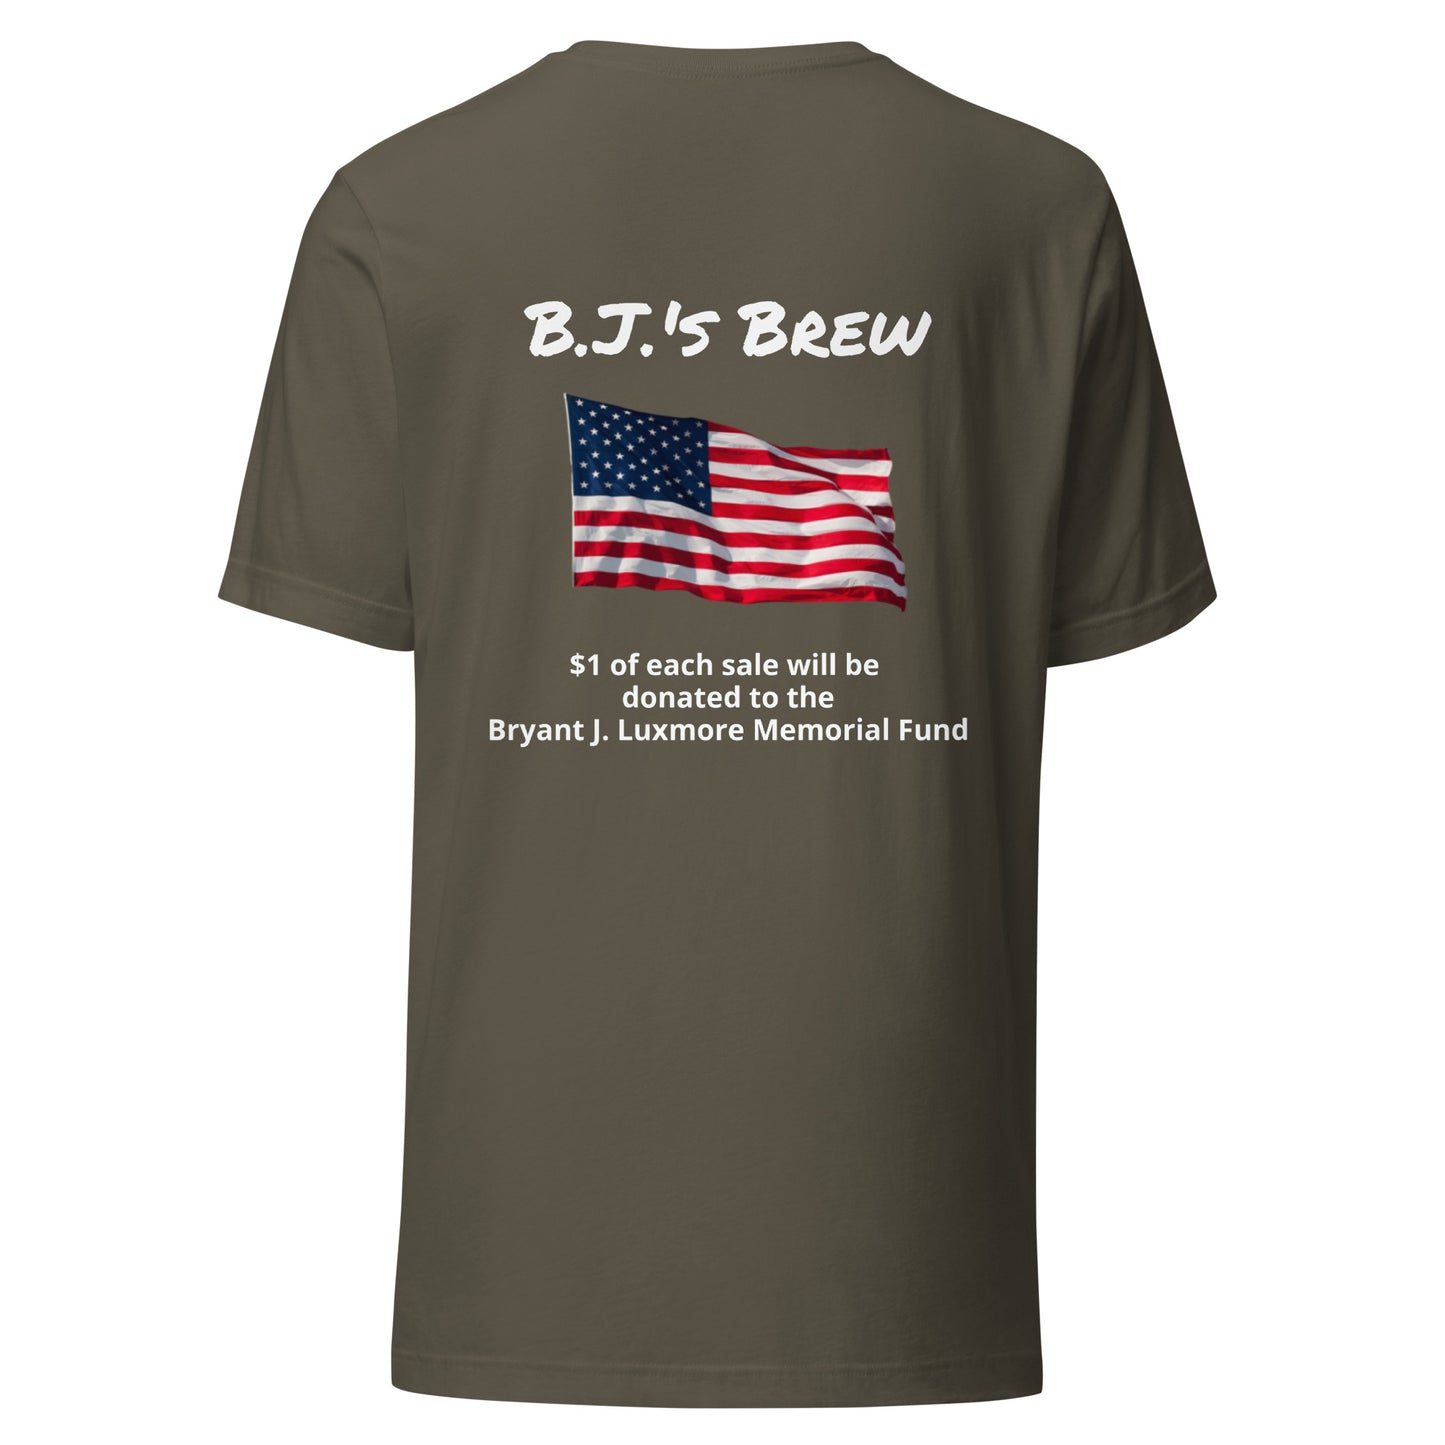 B.J.'s Brew (White Lettering) unisex t-shirt